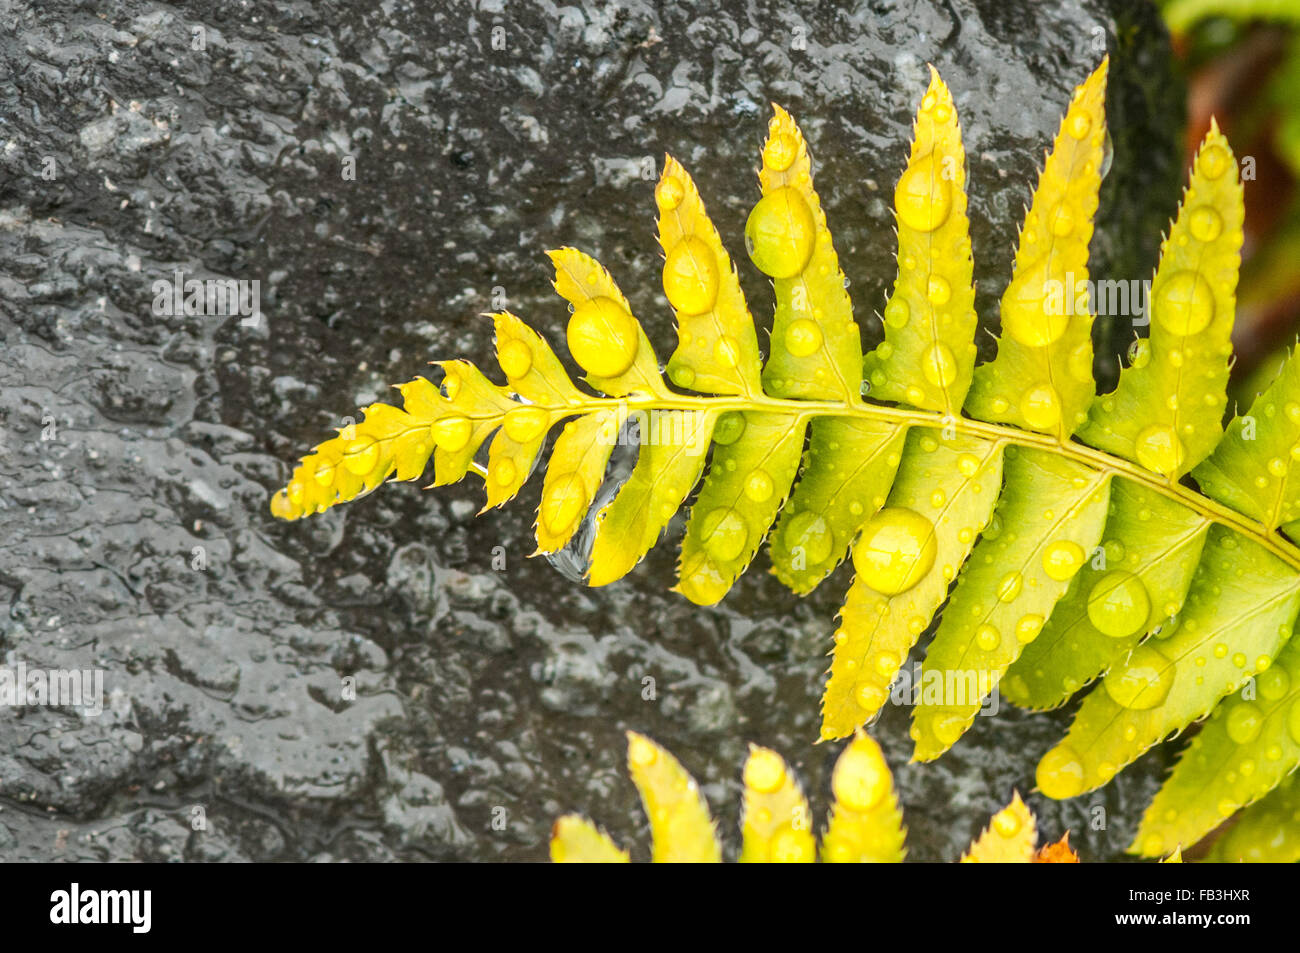 Les frondes vert-jaune d'une fougère alpine sont couverts dans les gouttelettes d'eau et les graines de surface d'un empierrement l'arrière-plan. Banque D'Images